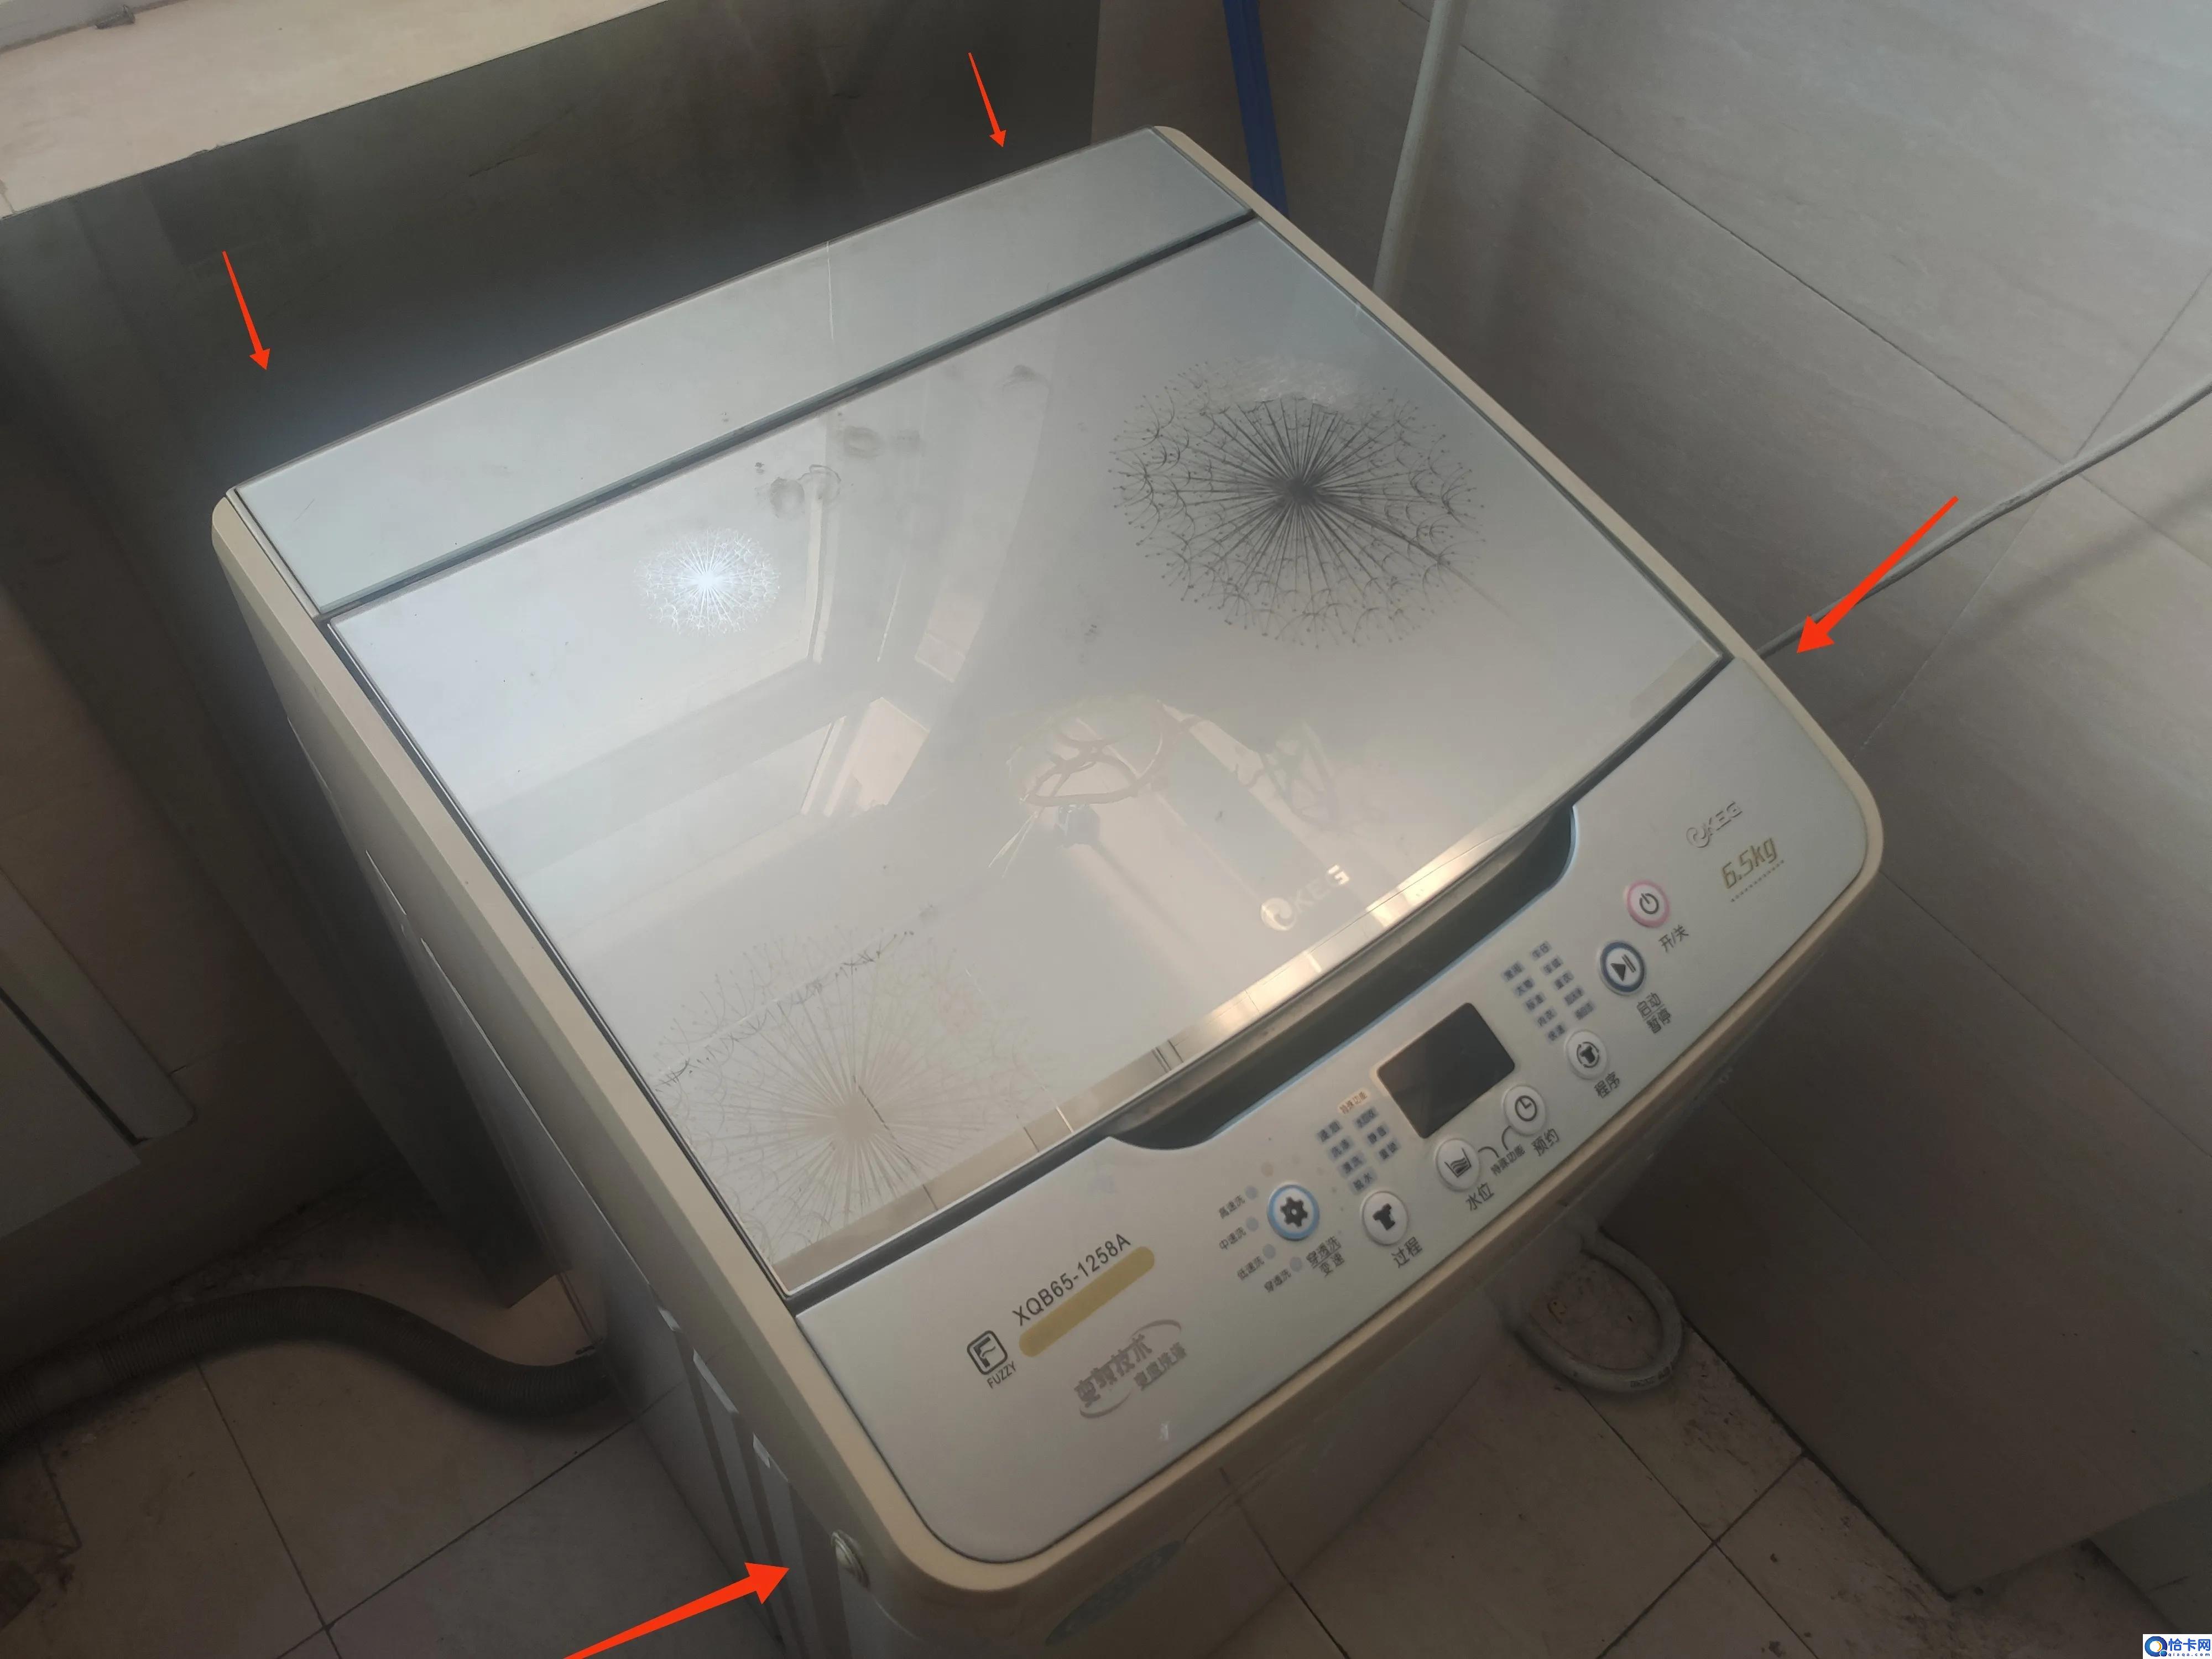 松下洗衣机怎么样洗得干净,清洗洗衣机最干净的操作方法